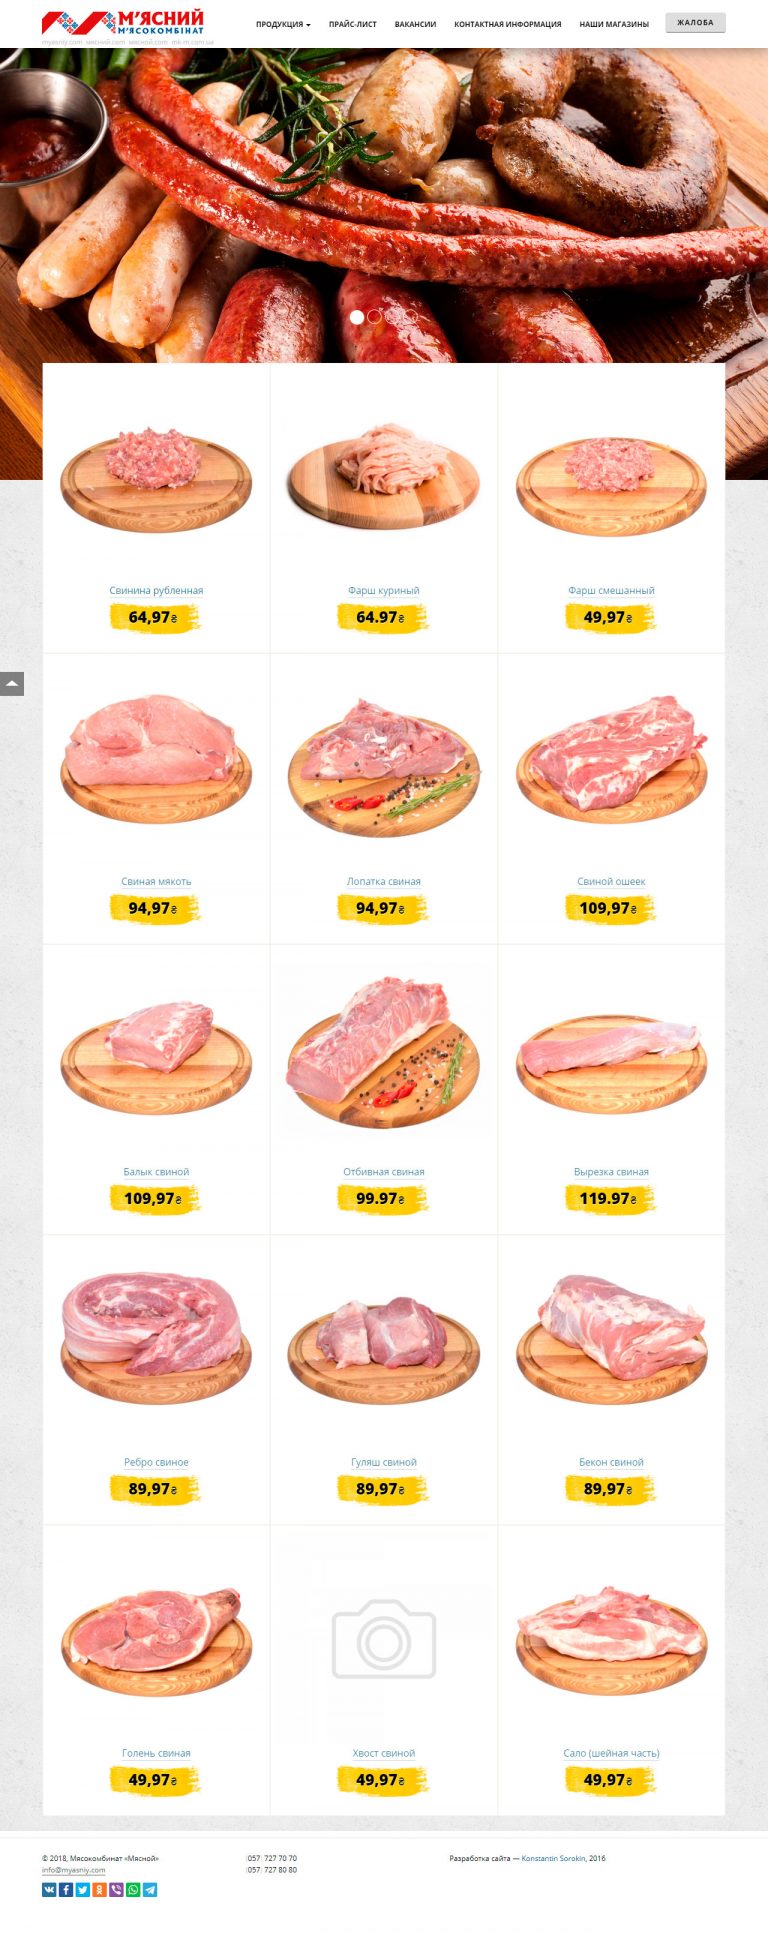 Сайт мясокомбината «М'ясний»